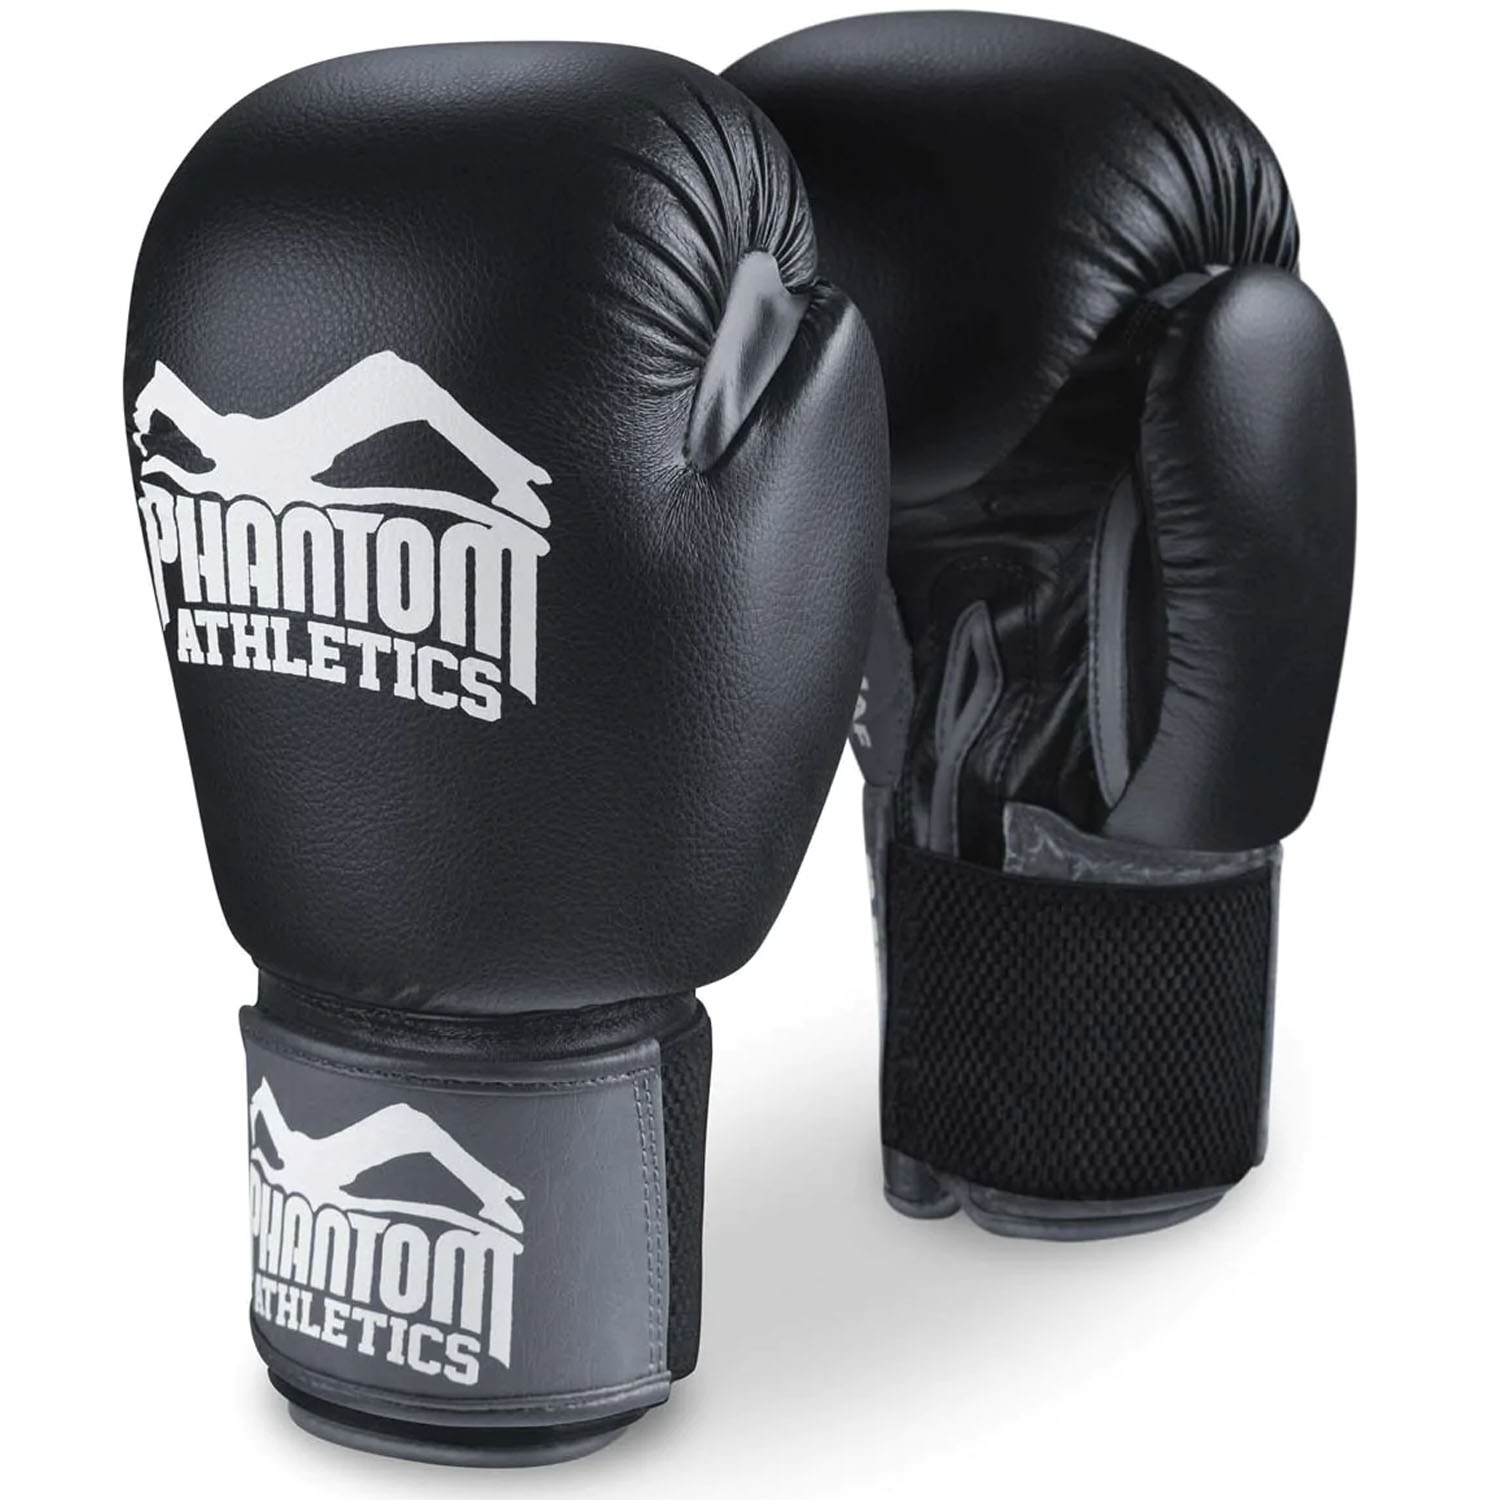 Phantom Athletics Boxhandschuhe, Ultra, schwarz, 10 Oz